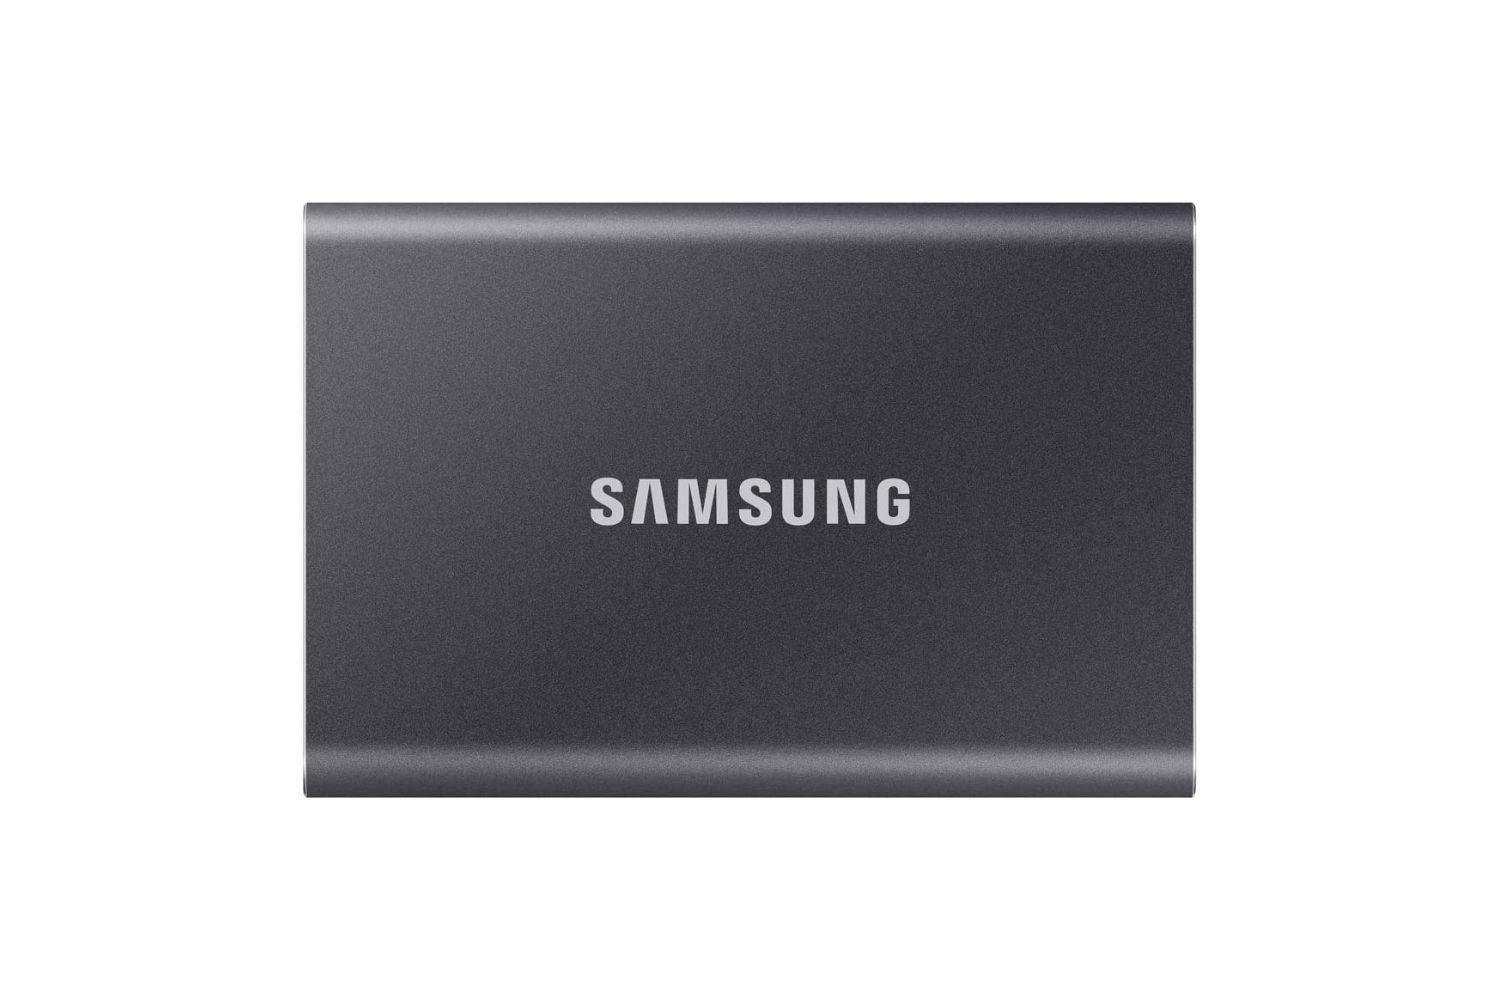 値下げ 12/13 SAMSUNG SSD 860 EVO 1TB (1)